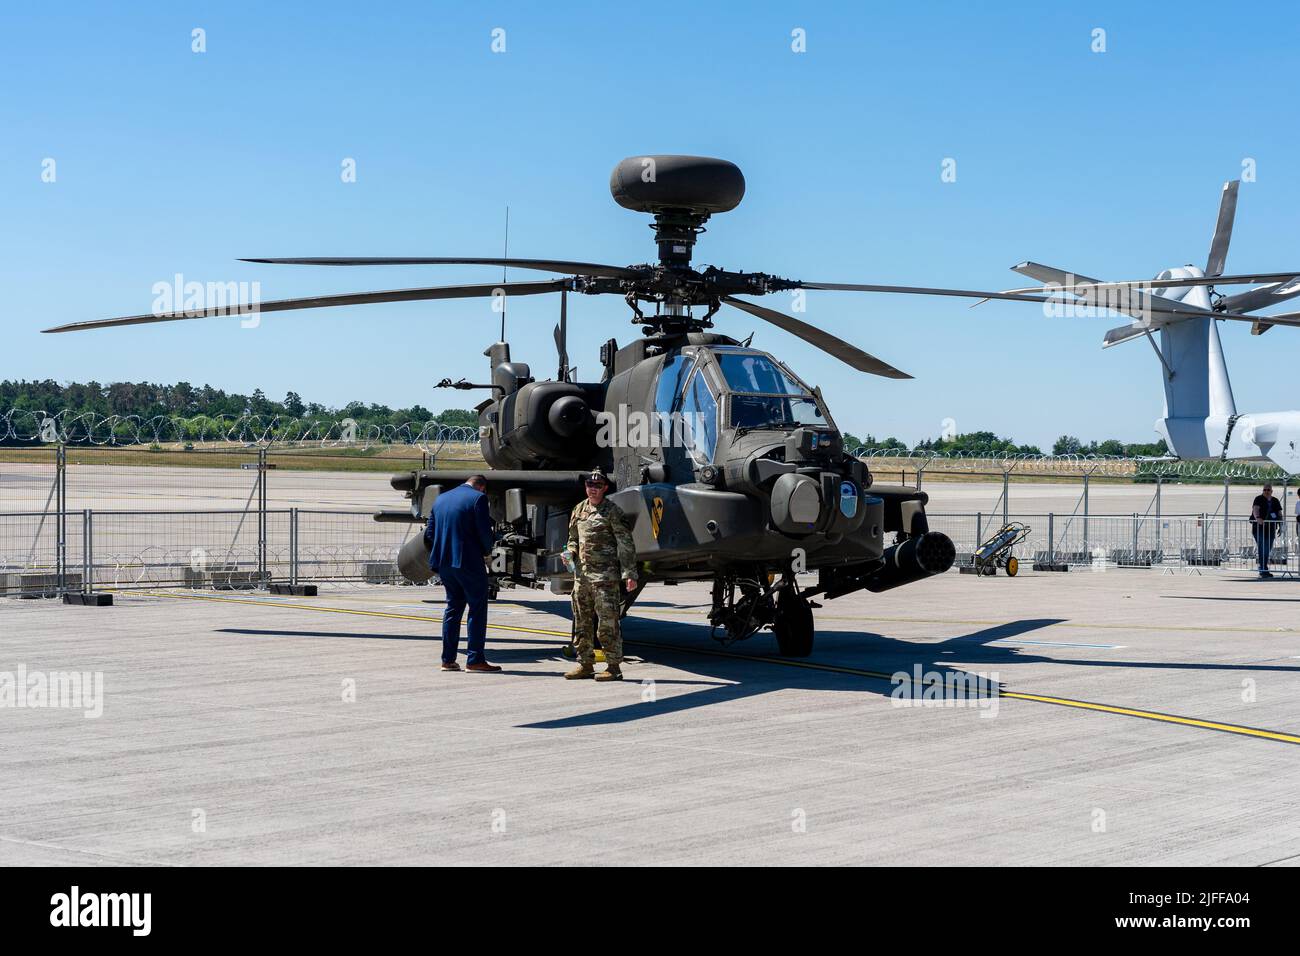 BERLÍN, ALEMANIA - 23 DE JUNIO de 2022: Helicóptero de ataque Boeing AH-64D Apache Longbow. Ejército DE LOS EE.UU. Exposición ILA Berlin Air Show 2022 Foto de stock